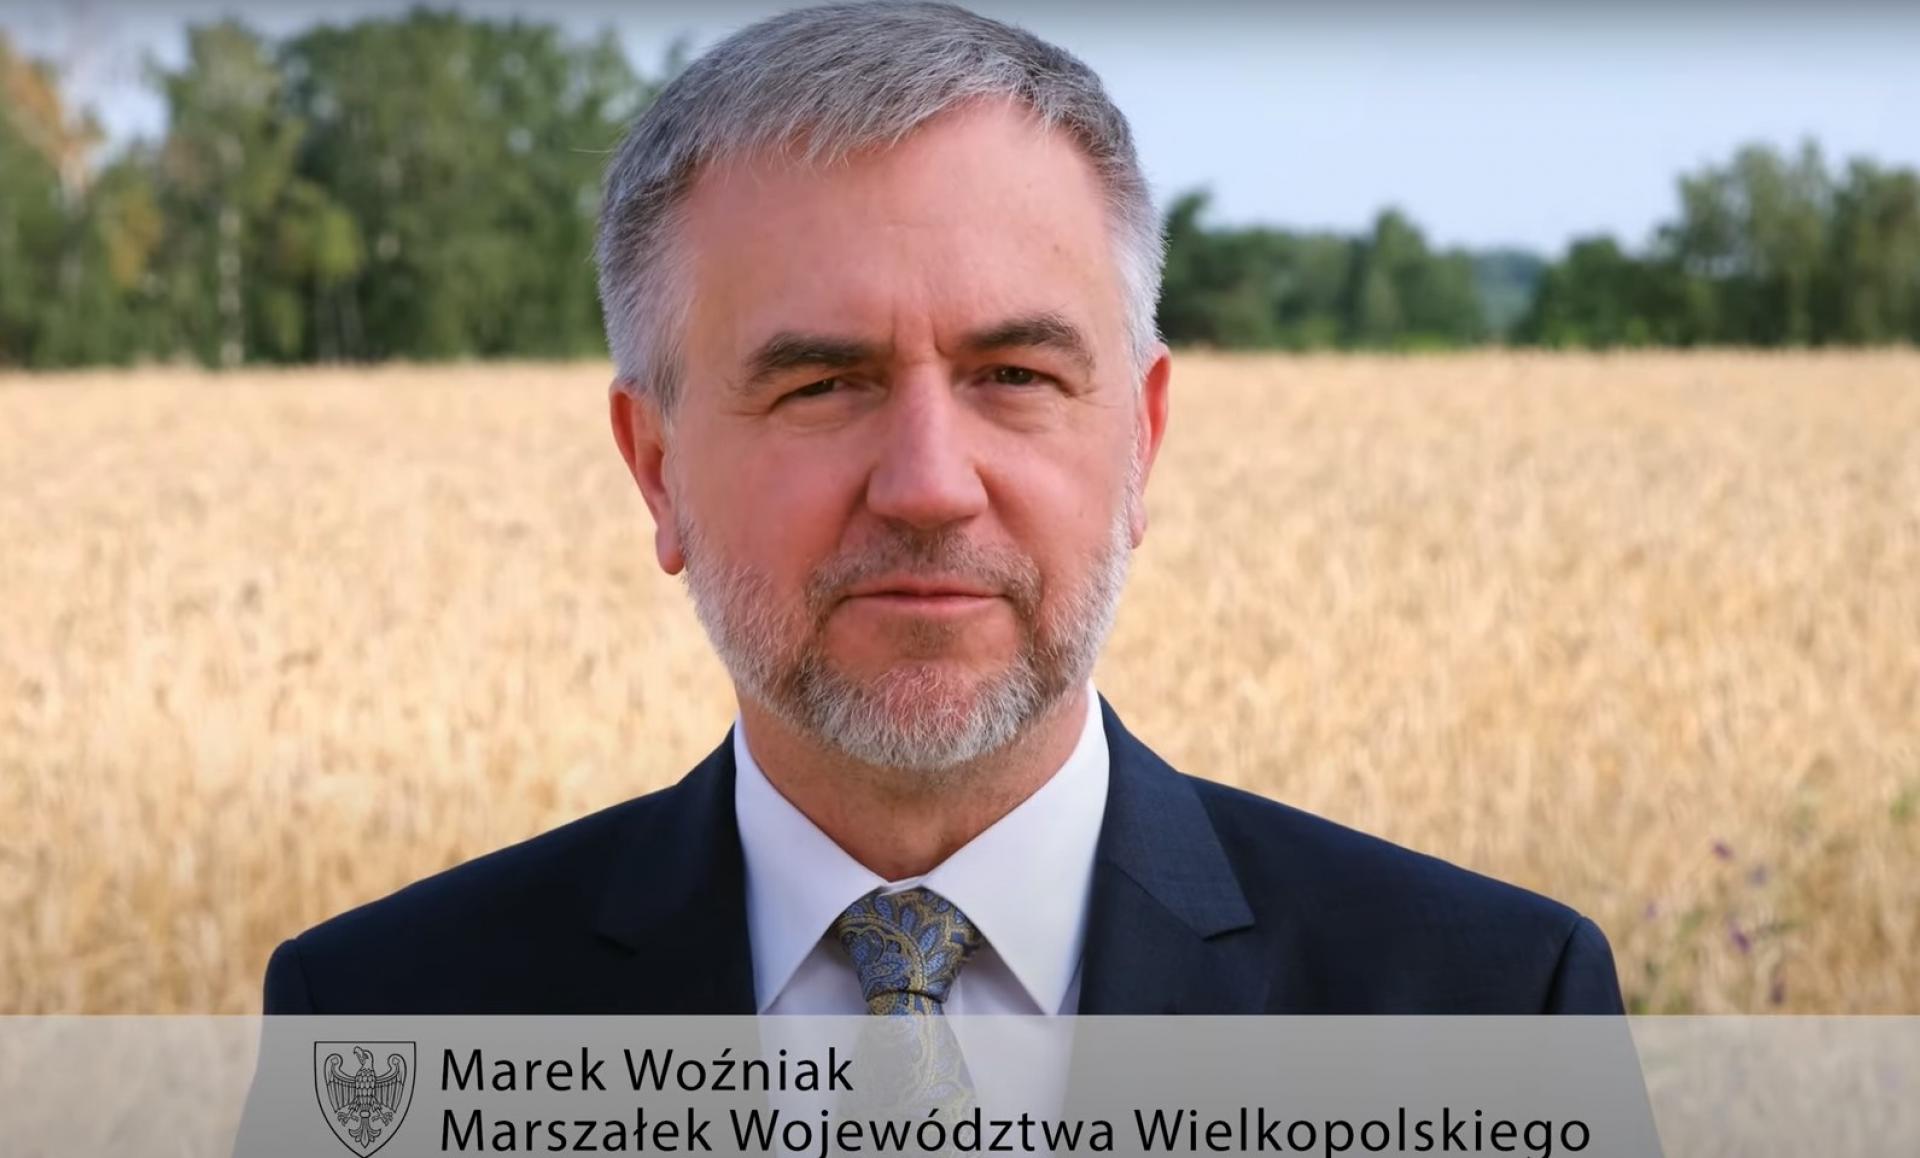 Trwa kampania #MamyChleb: Marszałek Marek Woźniak dziękuje rolnikom za ich trud  - zobacz więcej